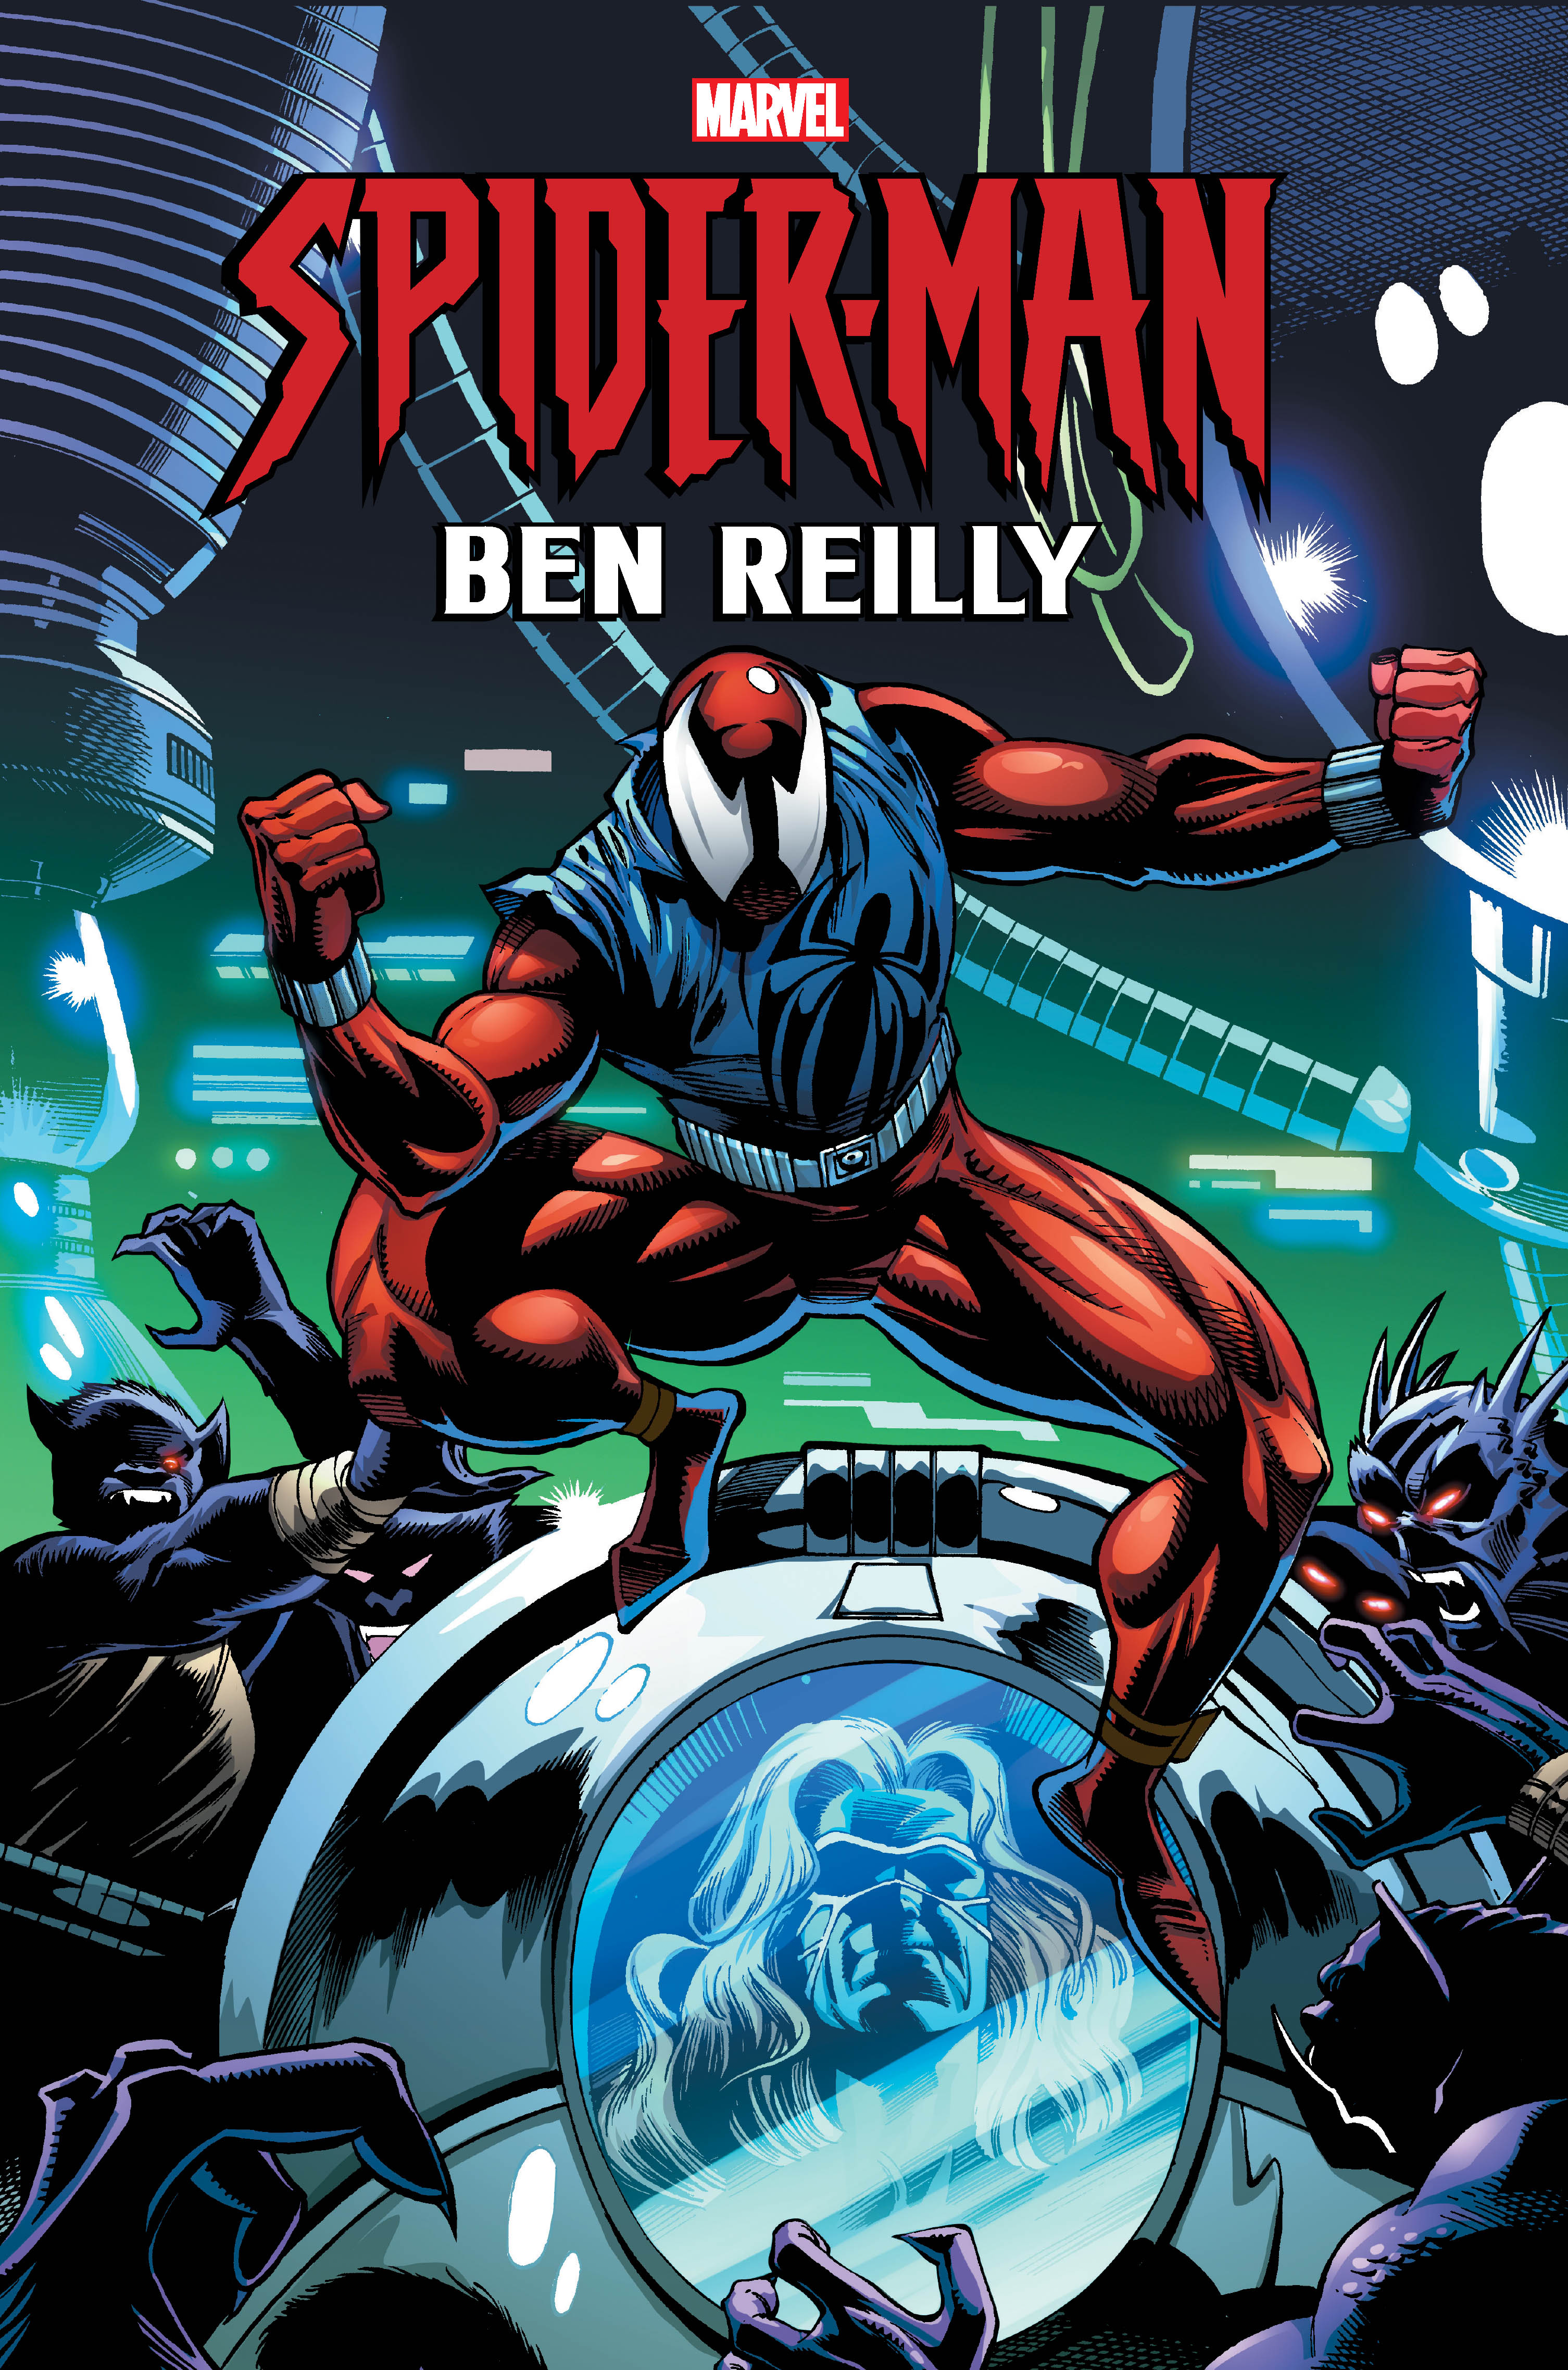 Spider-Man: Ben Reilly Omnibus Vol. 1 (Hardcover)